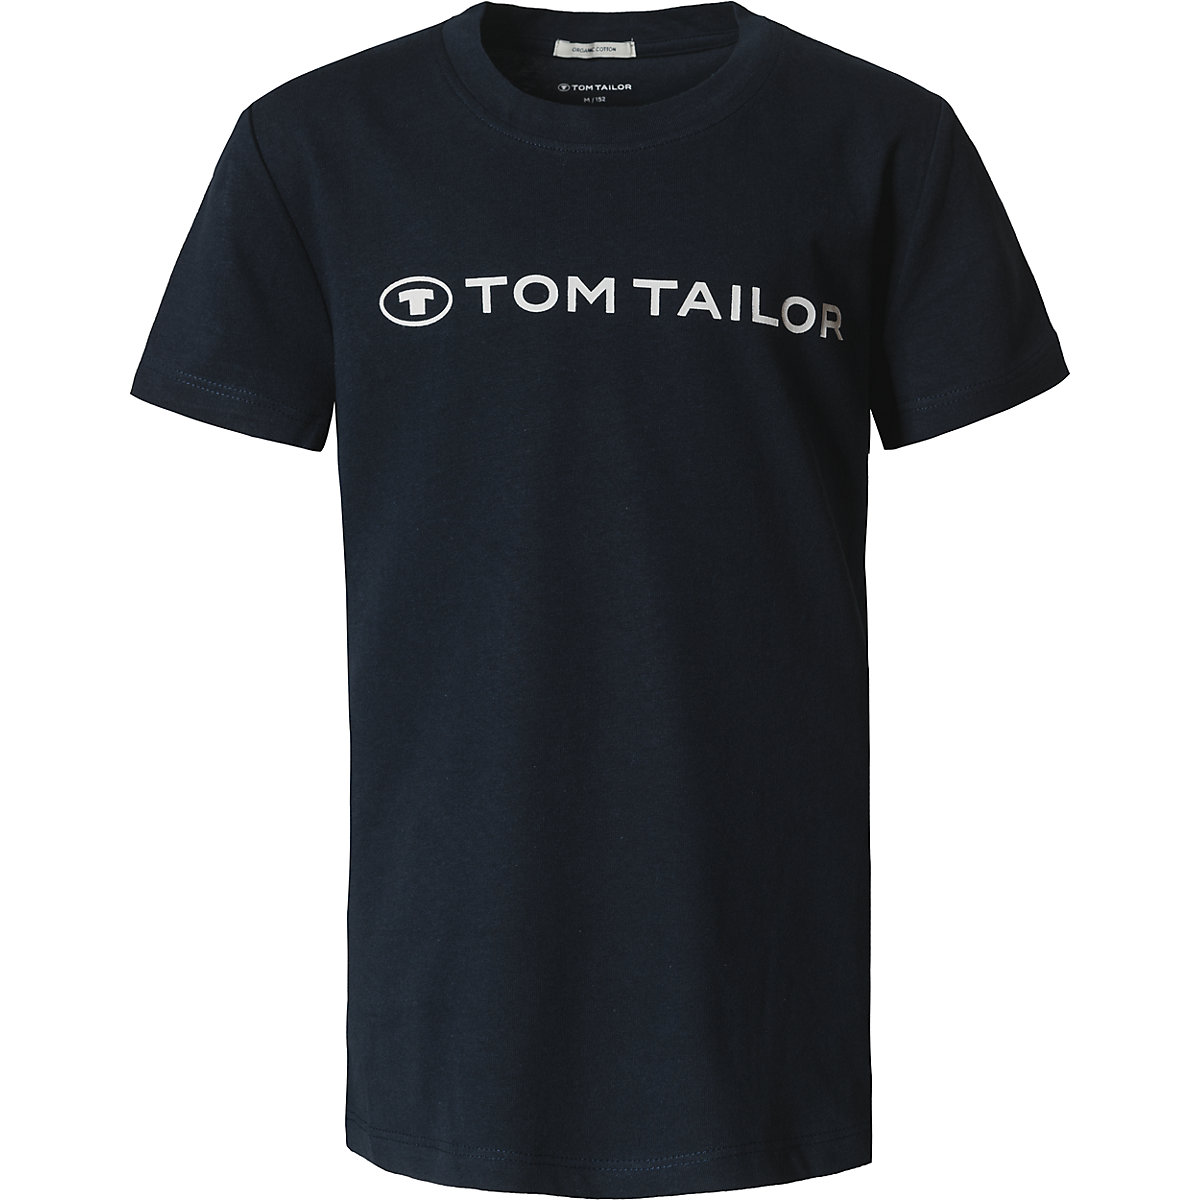 TOM TAILOR T-Shirt für Mädchen Organic Cotton dunkelblau